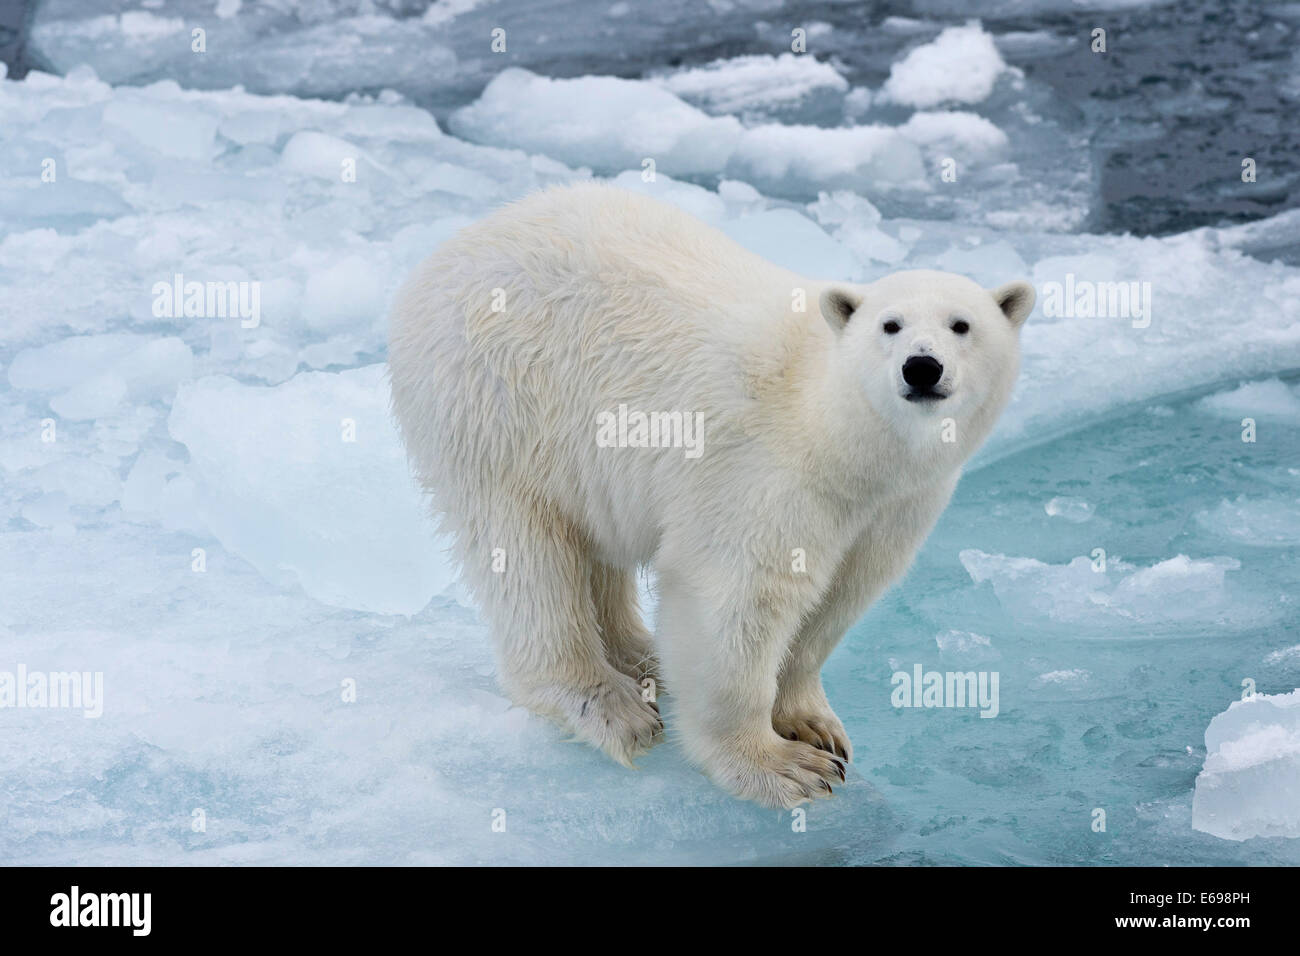 L'ours polaire (Ursus maritimus) sur la banquise, Spitsbergen, Svalbard, îles Svalbard et Jan Mayen (Norvège) Banque D'Images